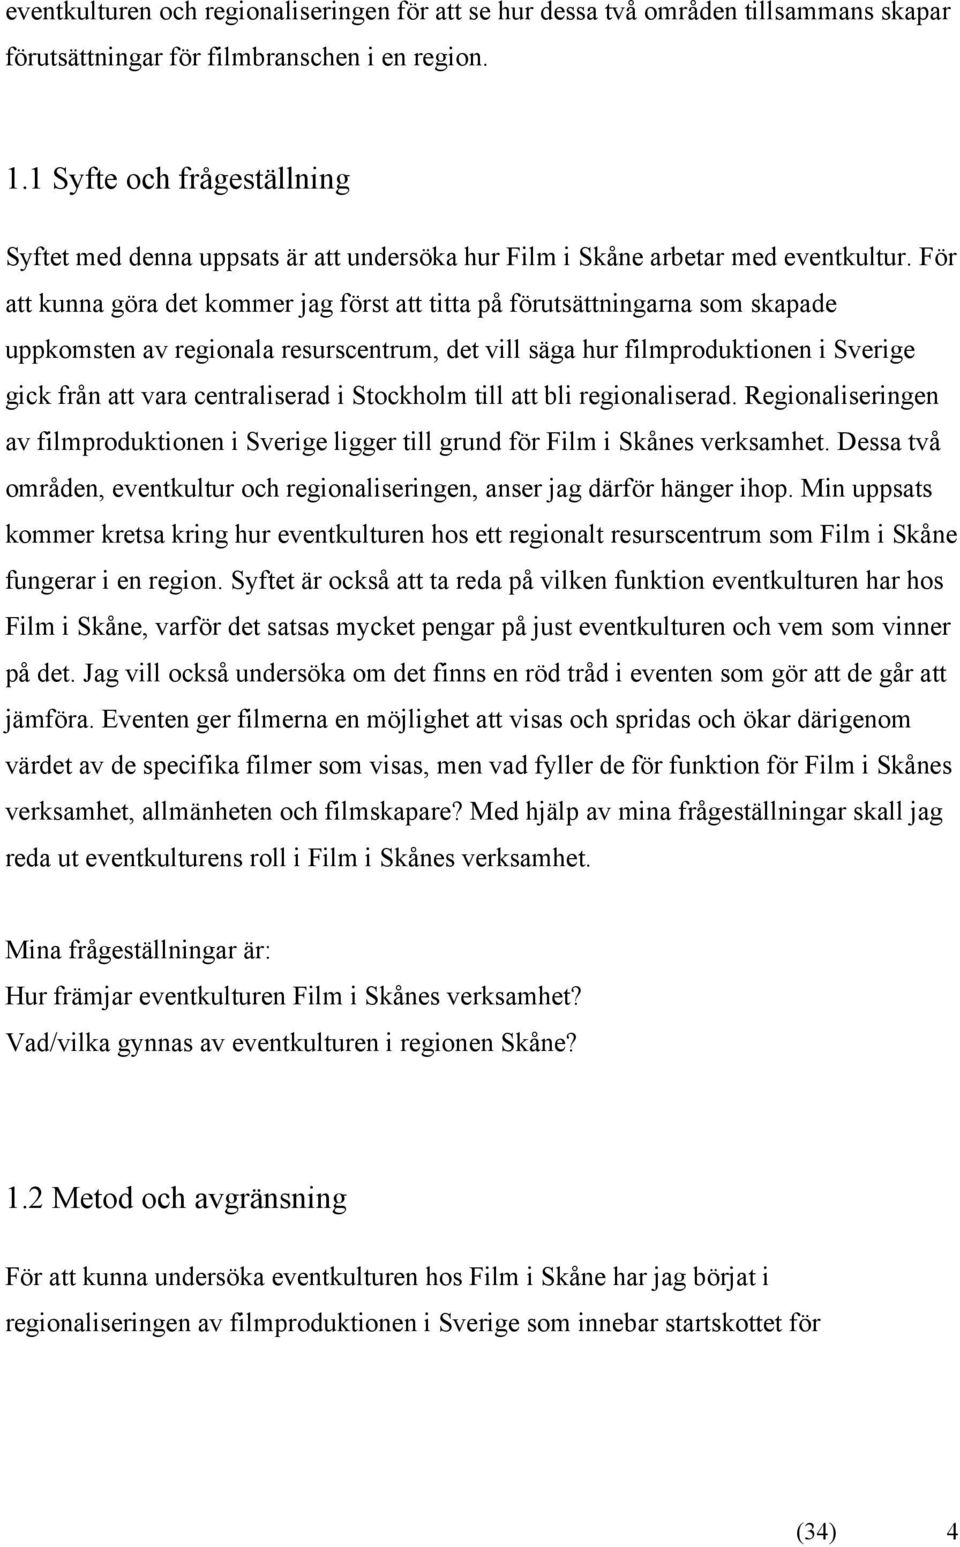 För att kunna göra det kommer jag först att titta på förutsättningarna som skapade uppkomsten av regionala resurscentrum, det vill säga hur filmproduktionen i Sverige gick från att vara centraliserad